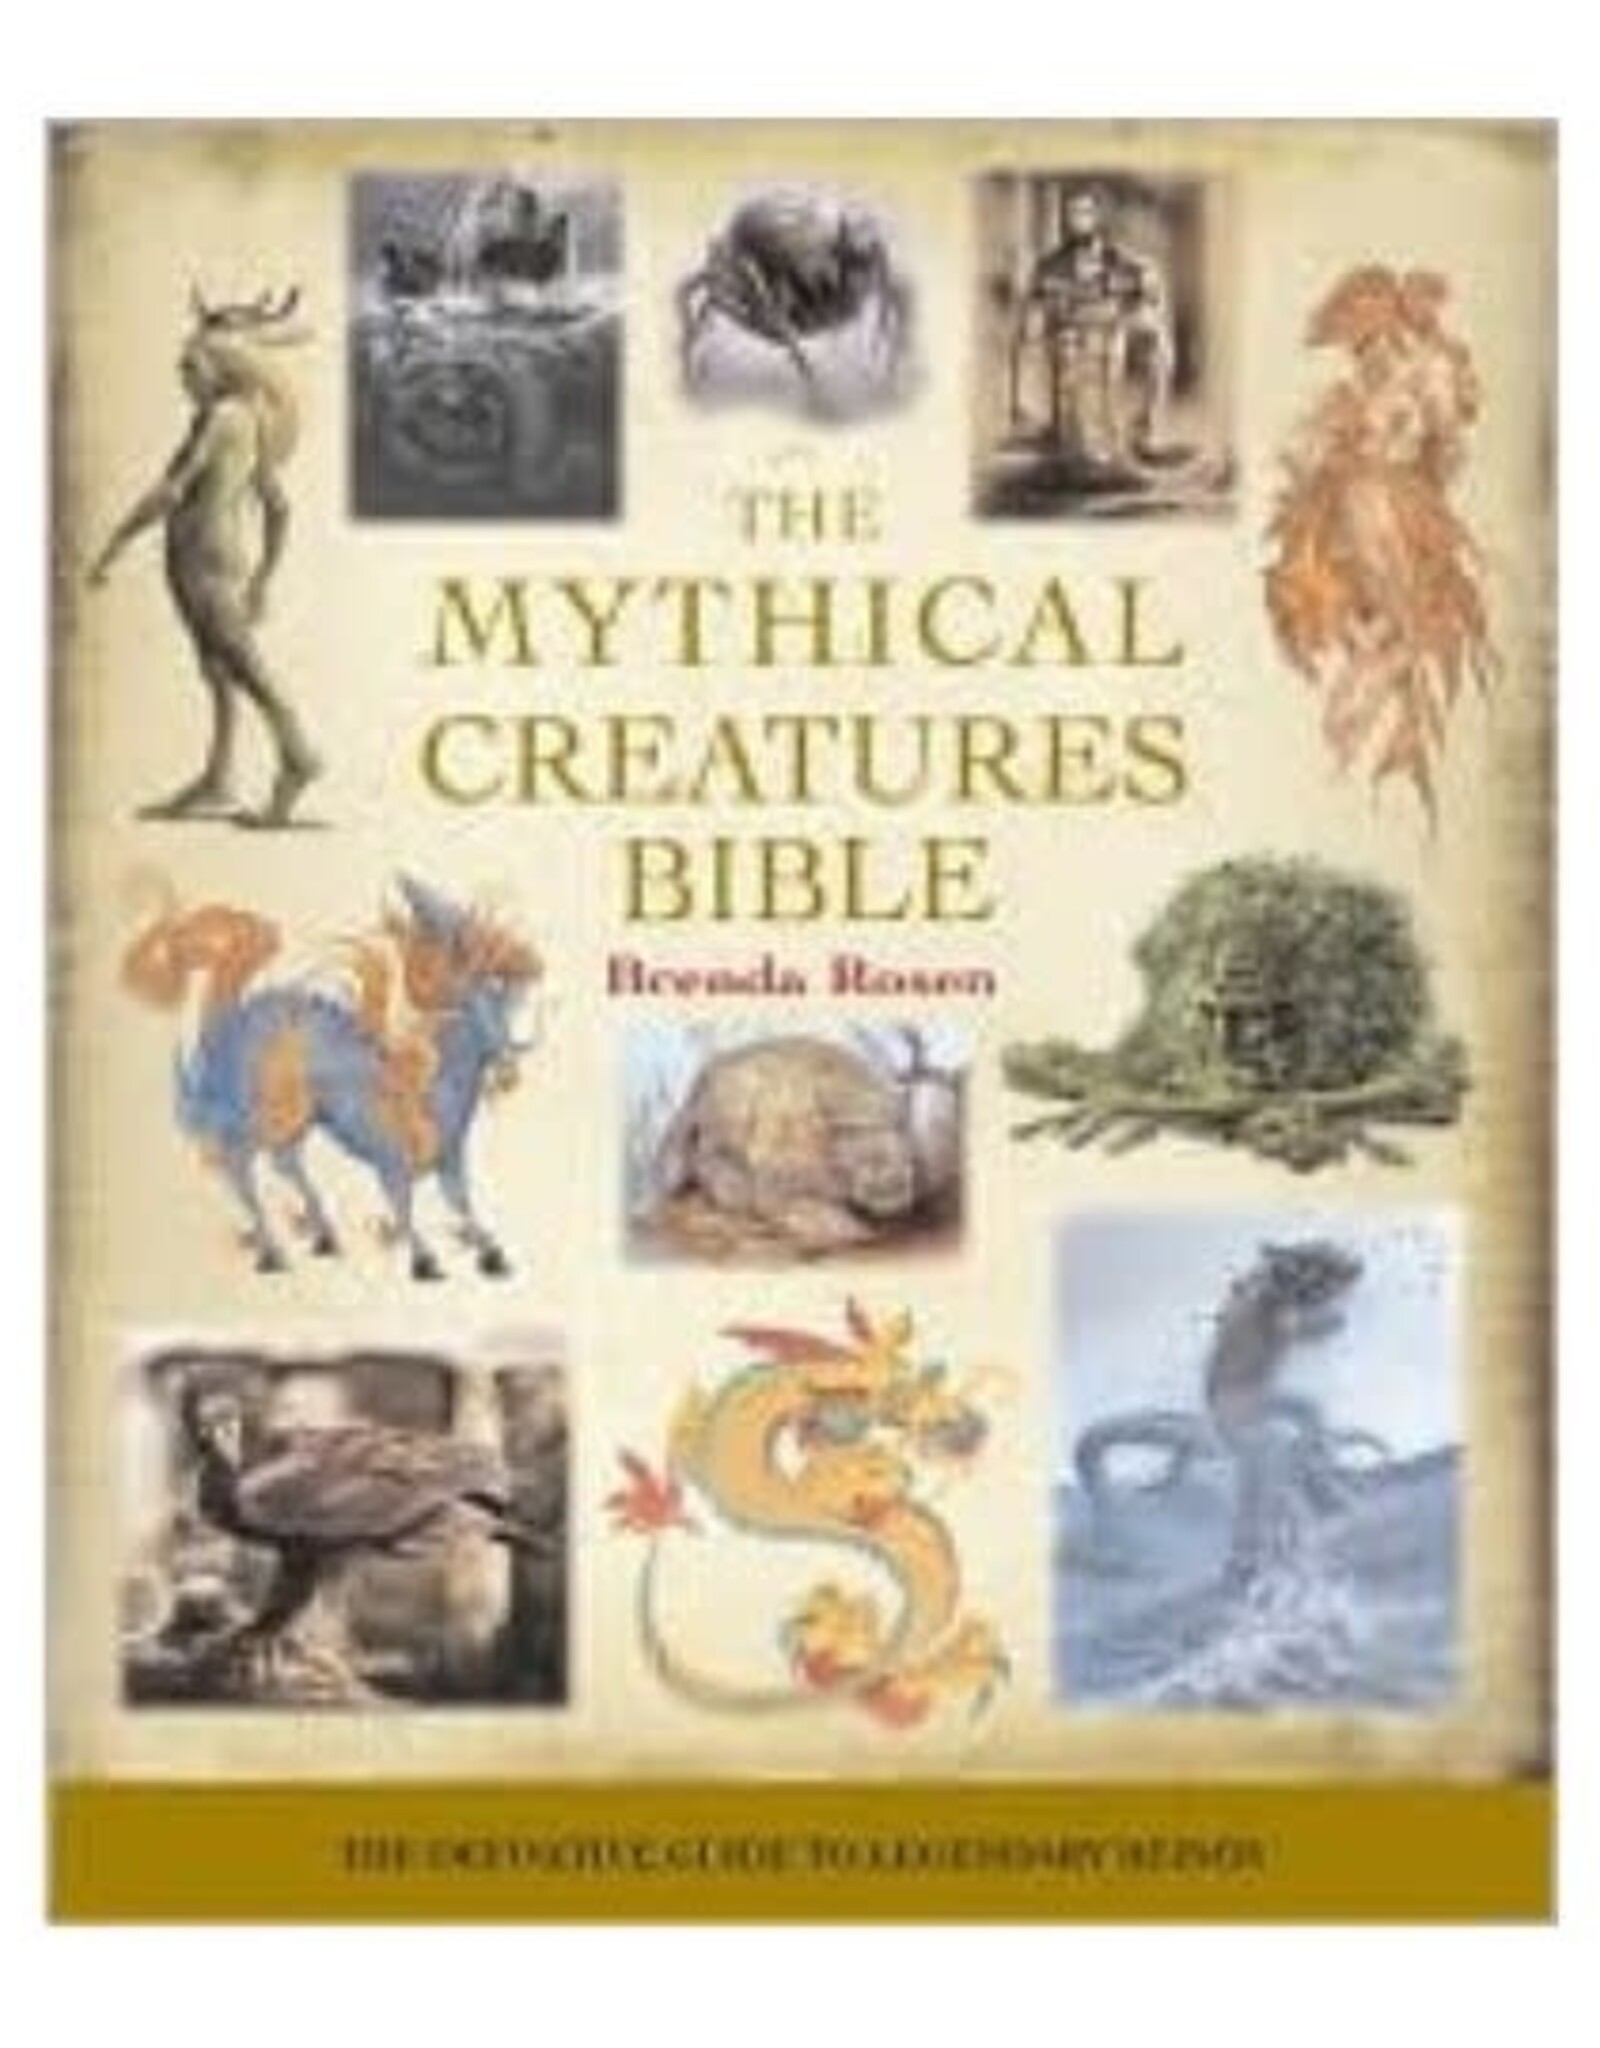 Brenda Rosen Mythical Creatures Bible by Brenda Rosen